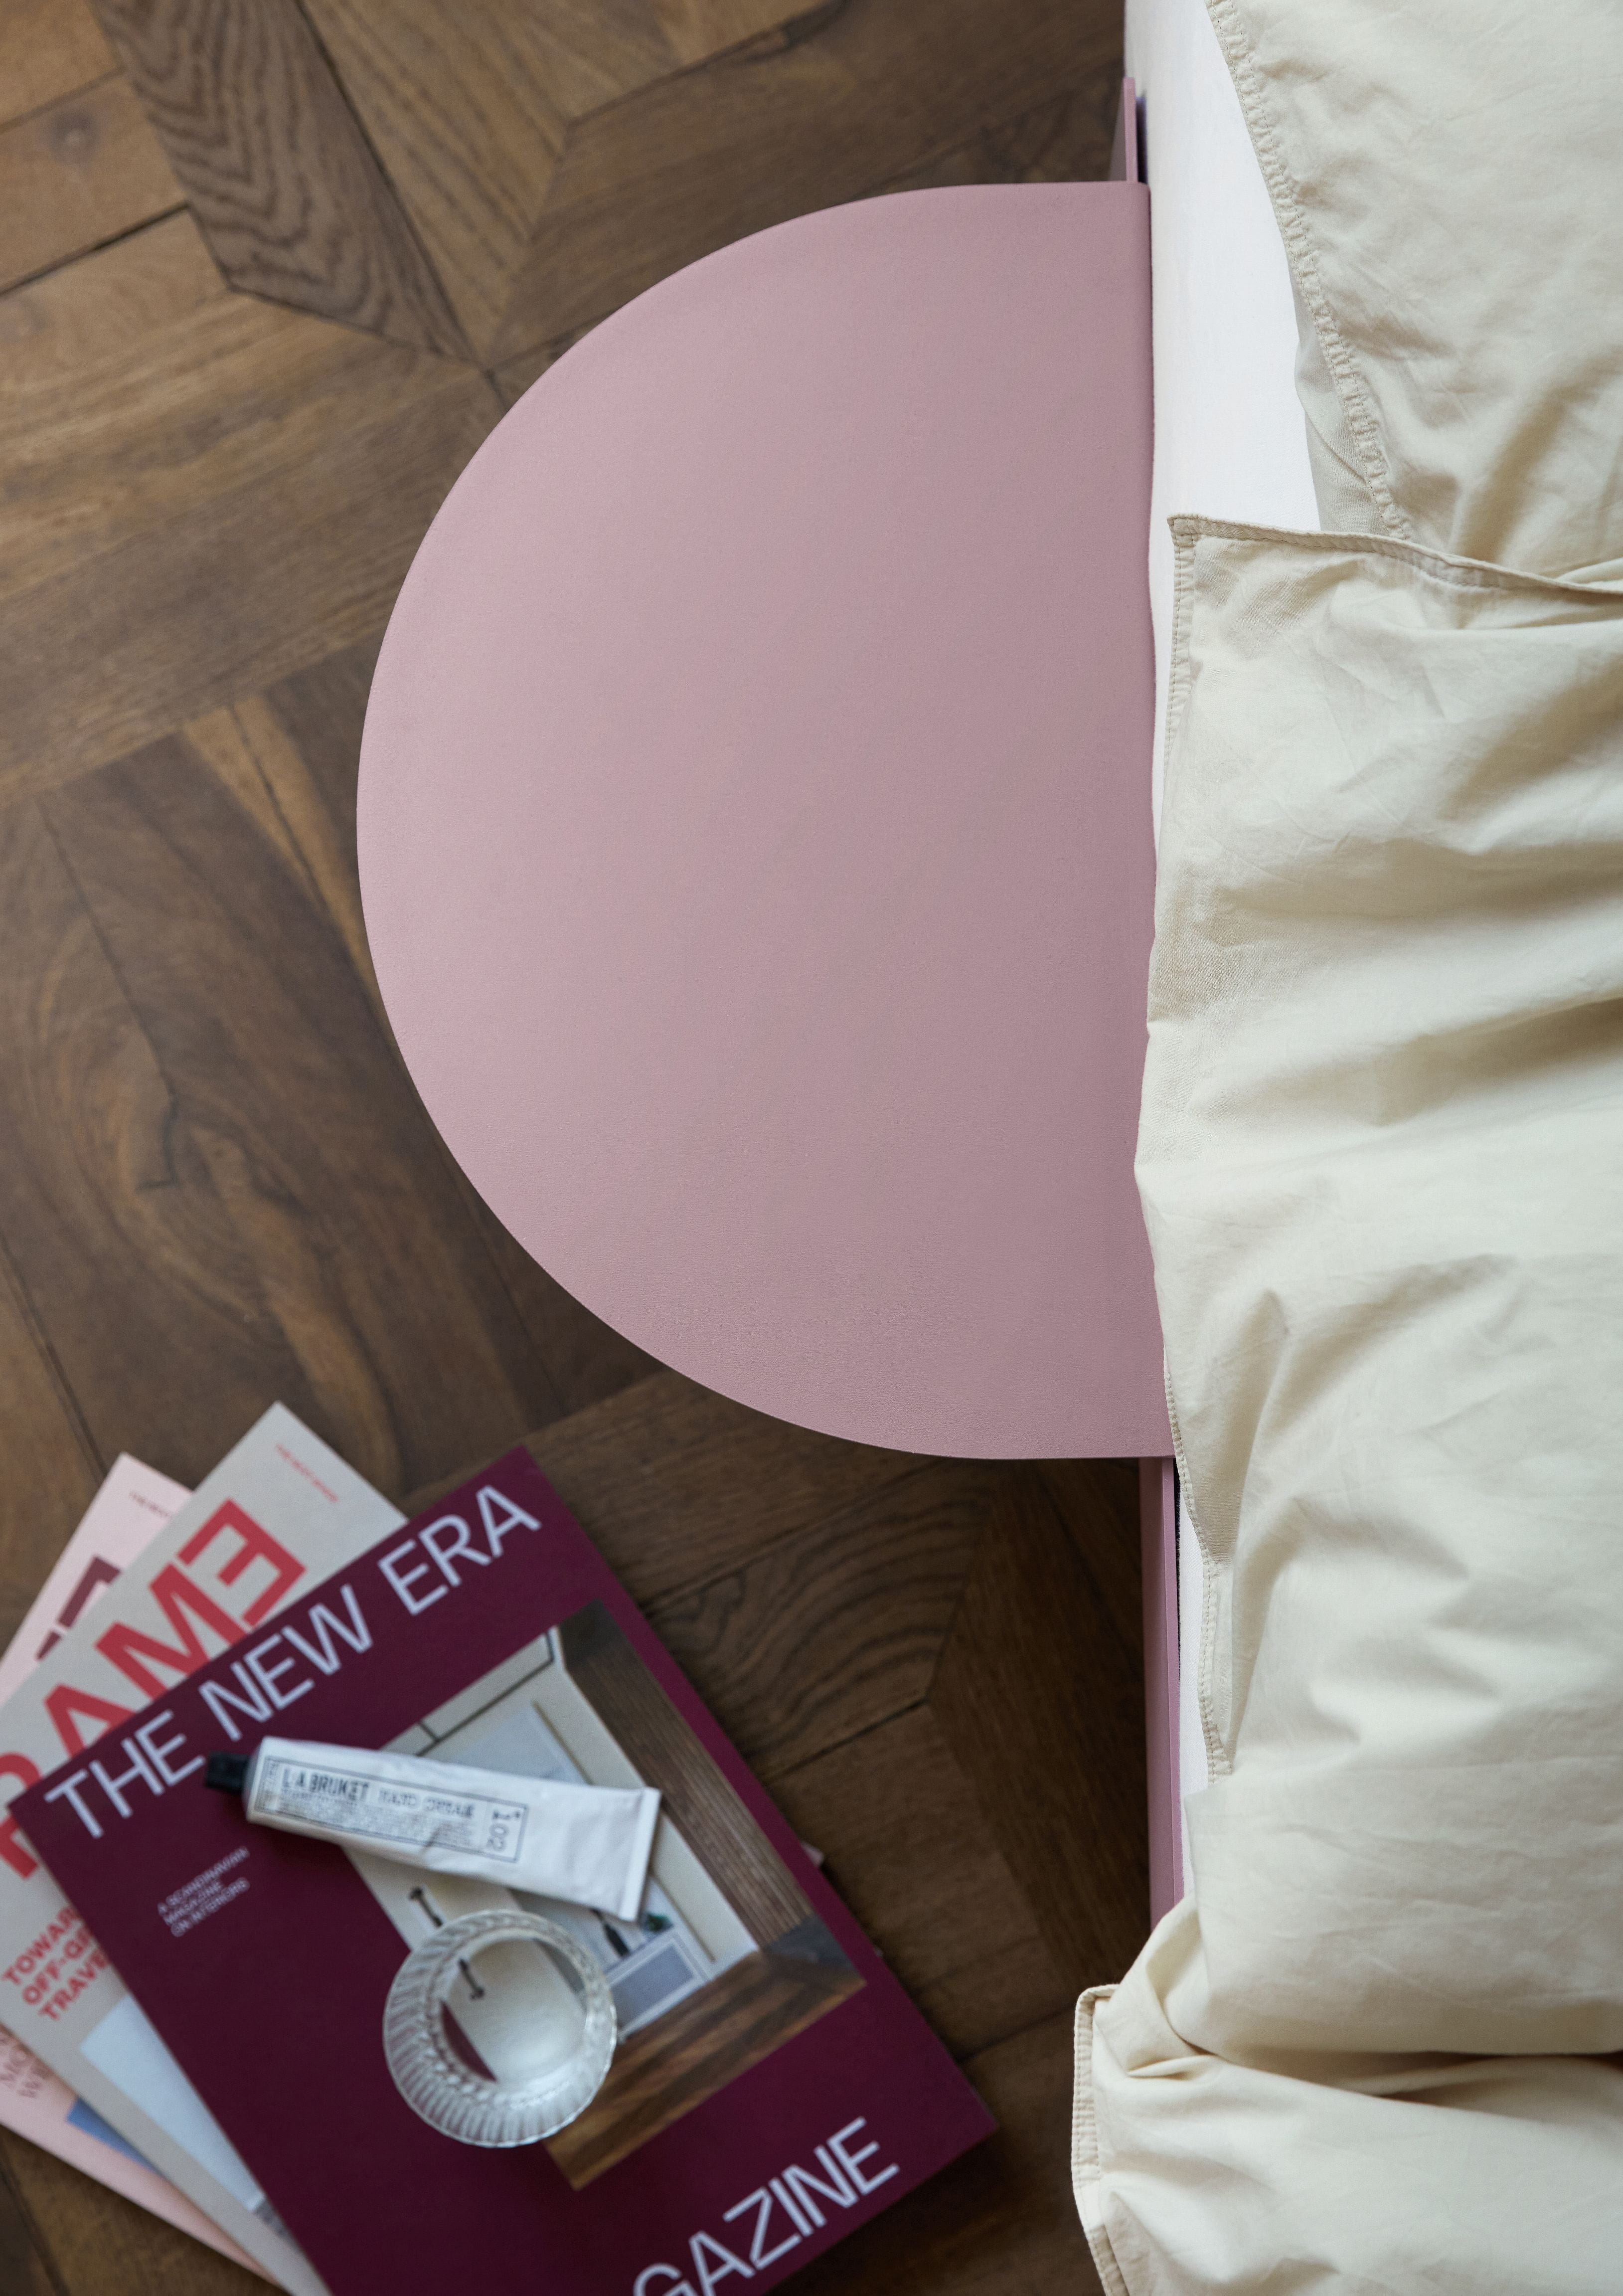 Moebe -säng med 1 sängbord 90 cm, dammig ros